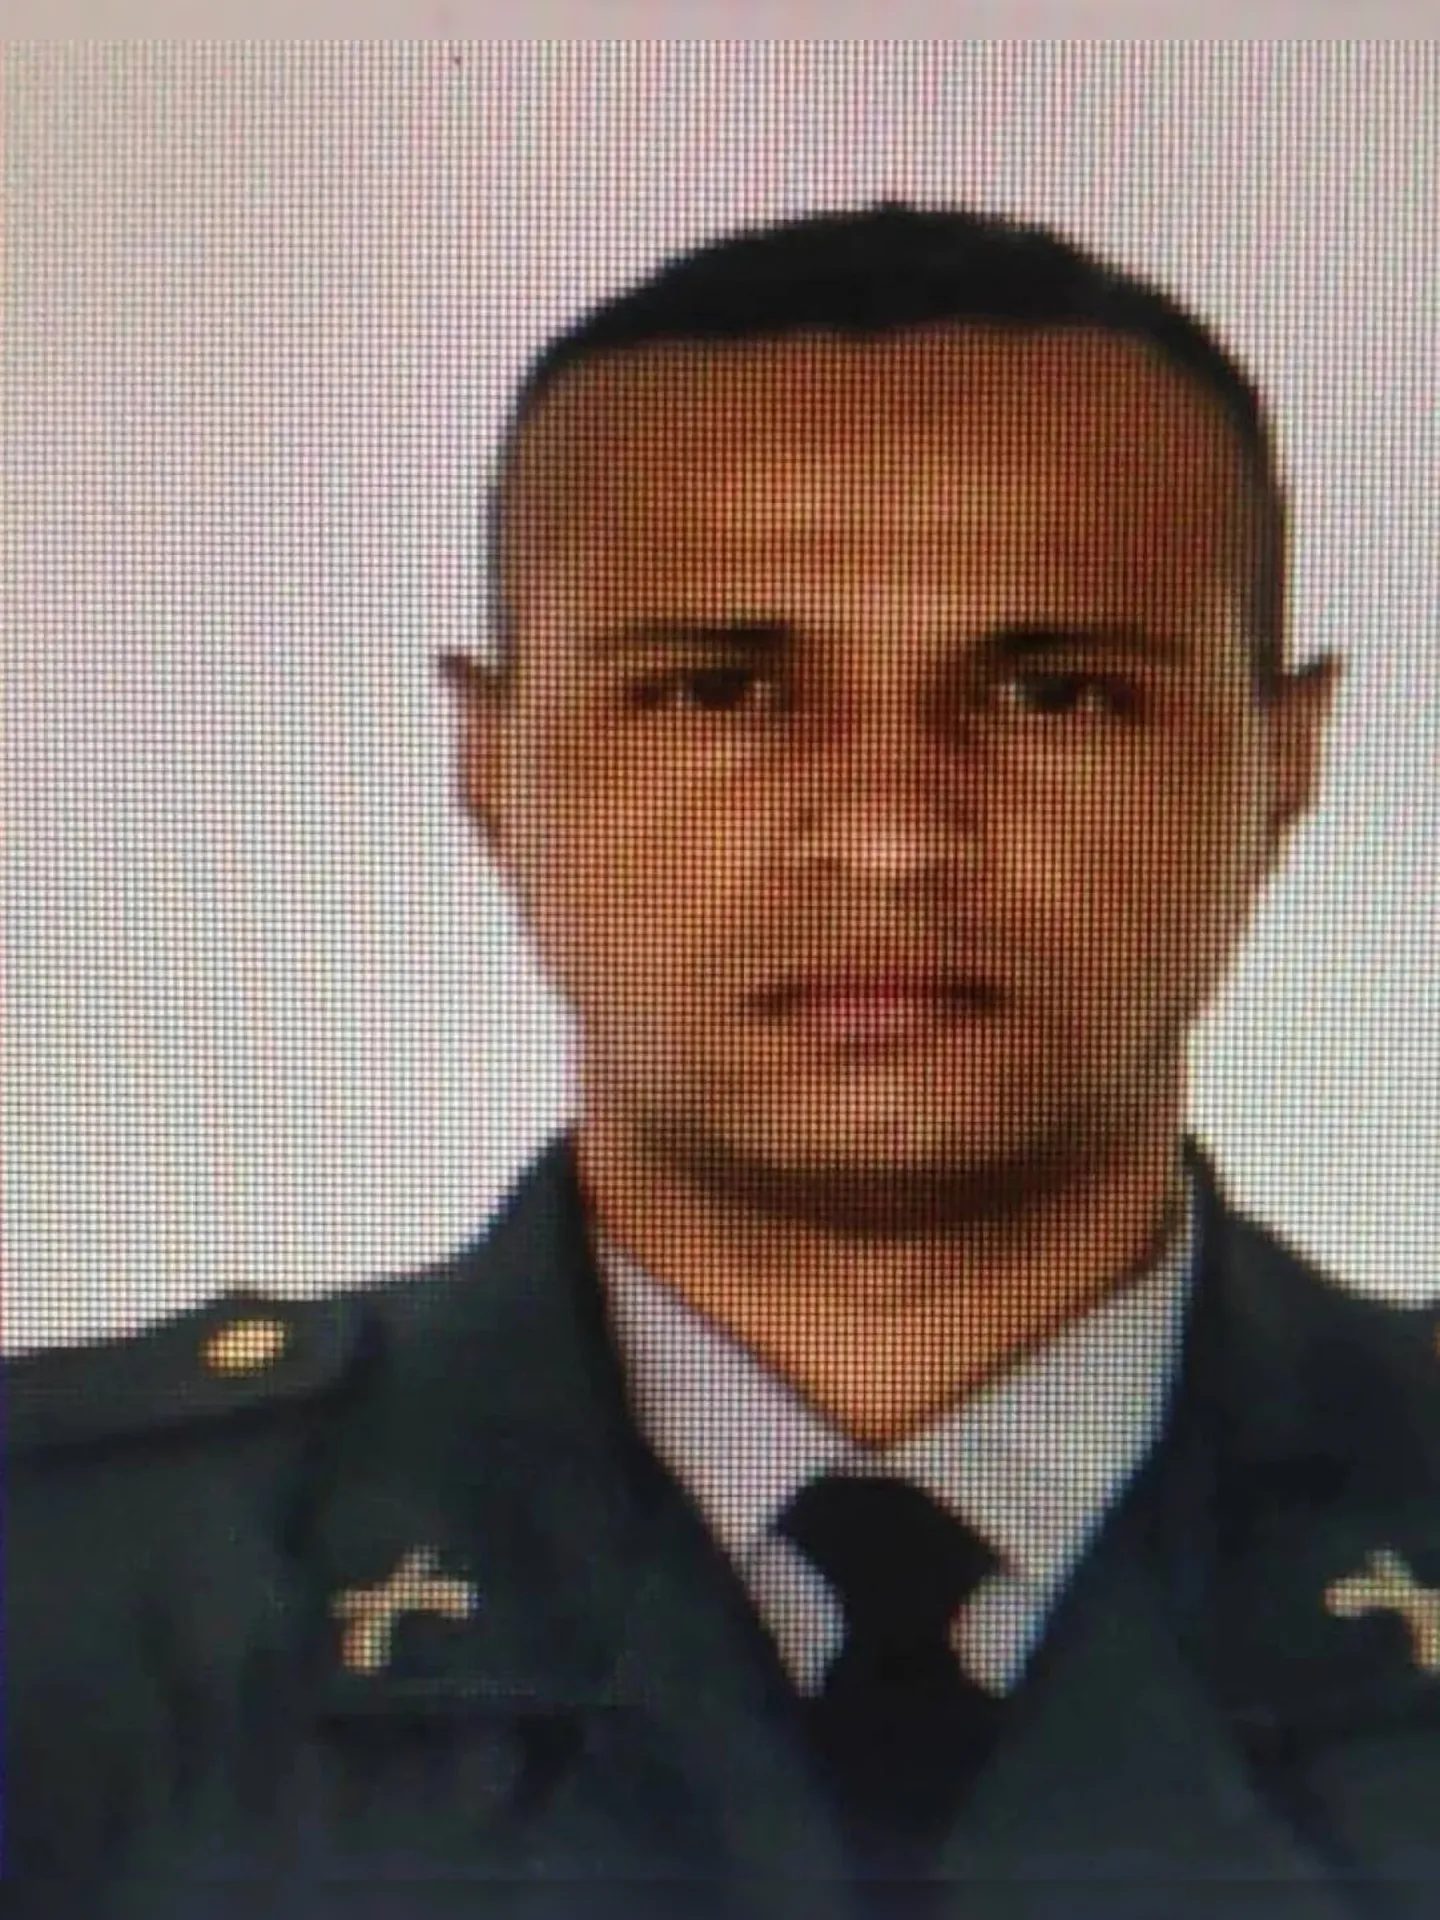 Policial militar Gabriel Nascimento de Carvalho era lotado no Batalhão da Maré